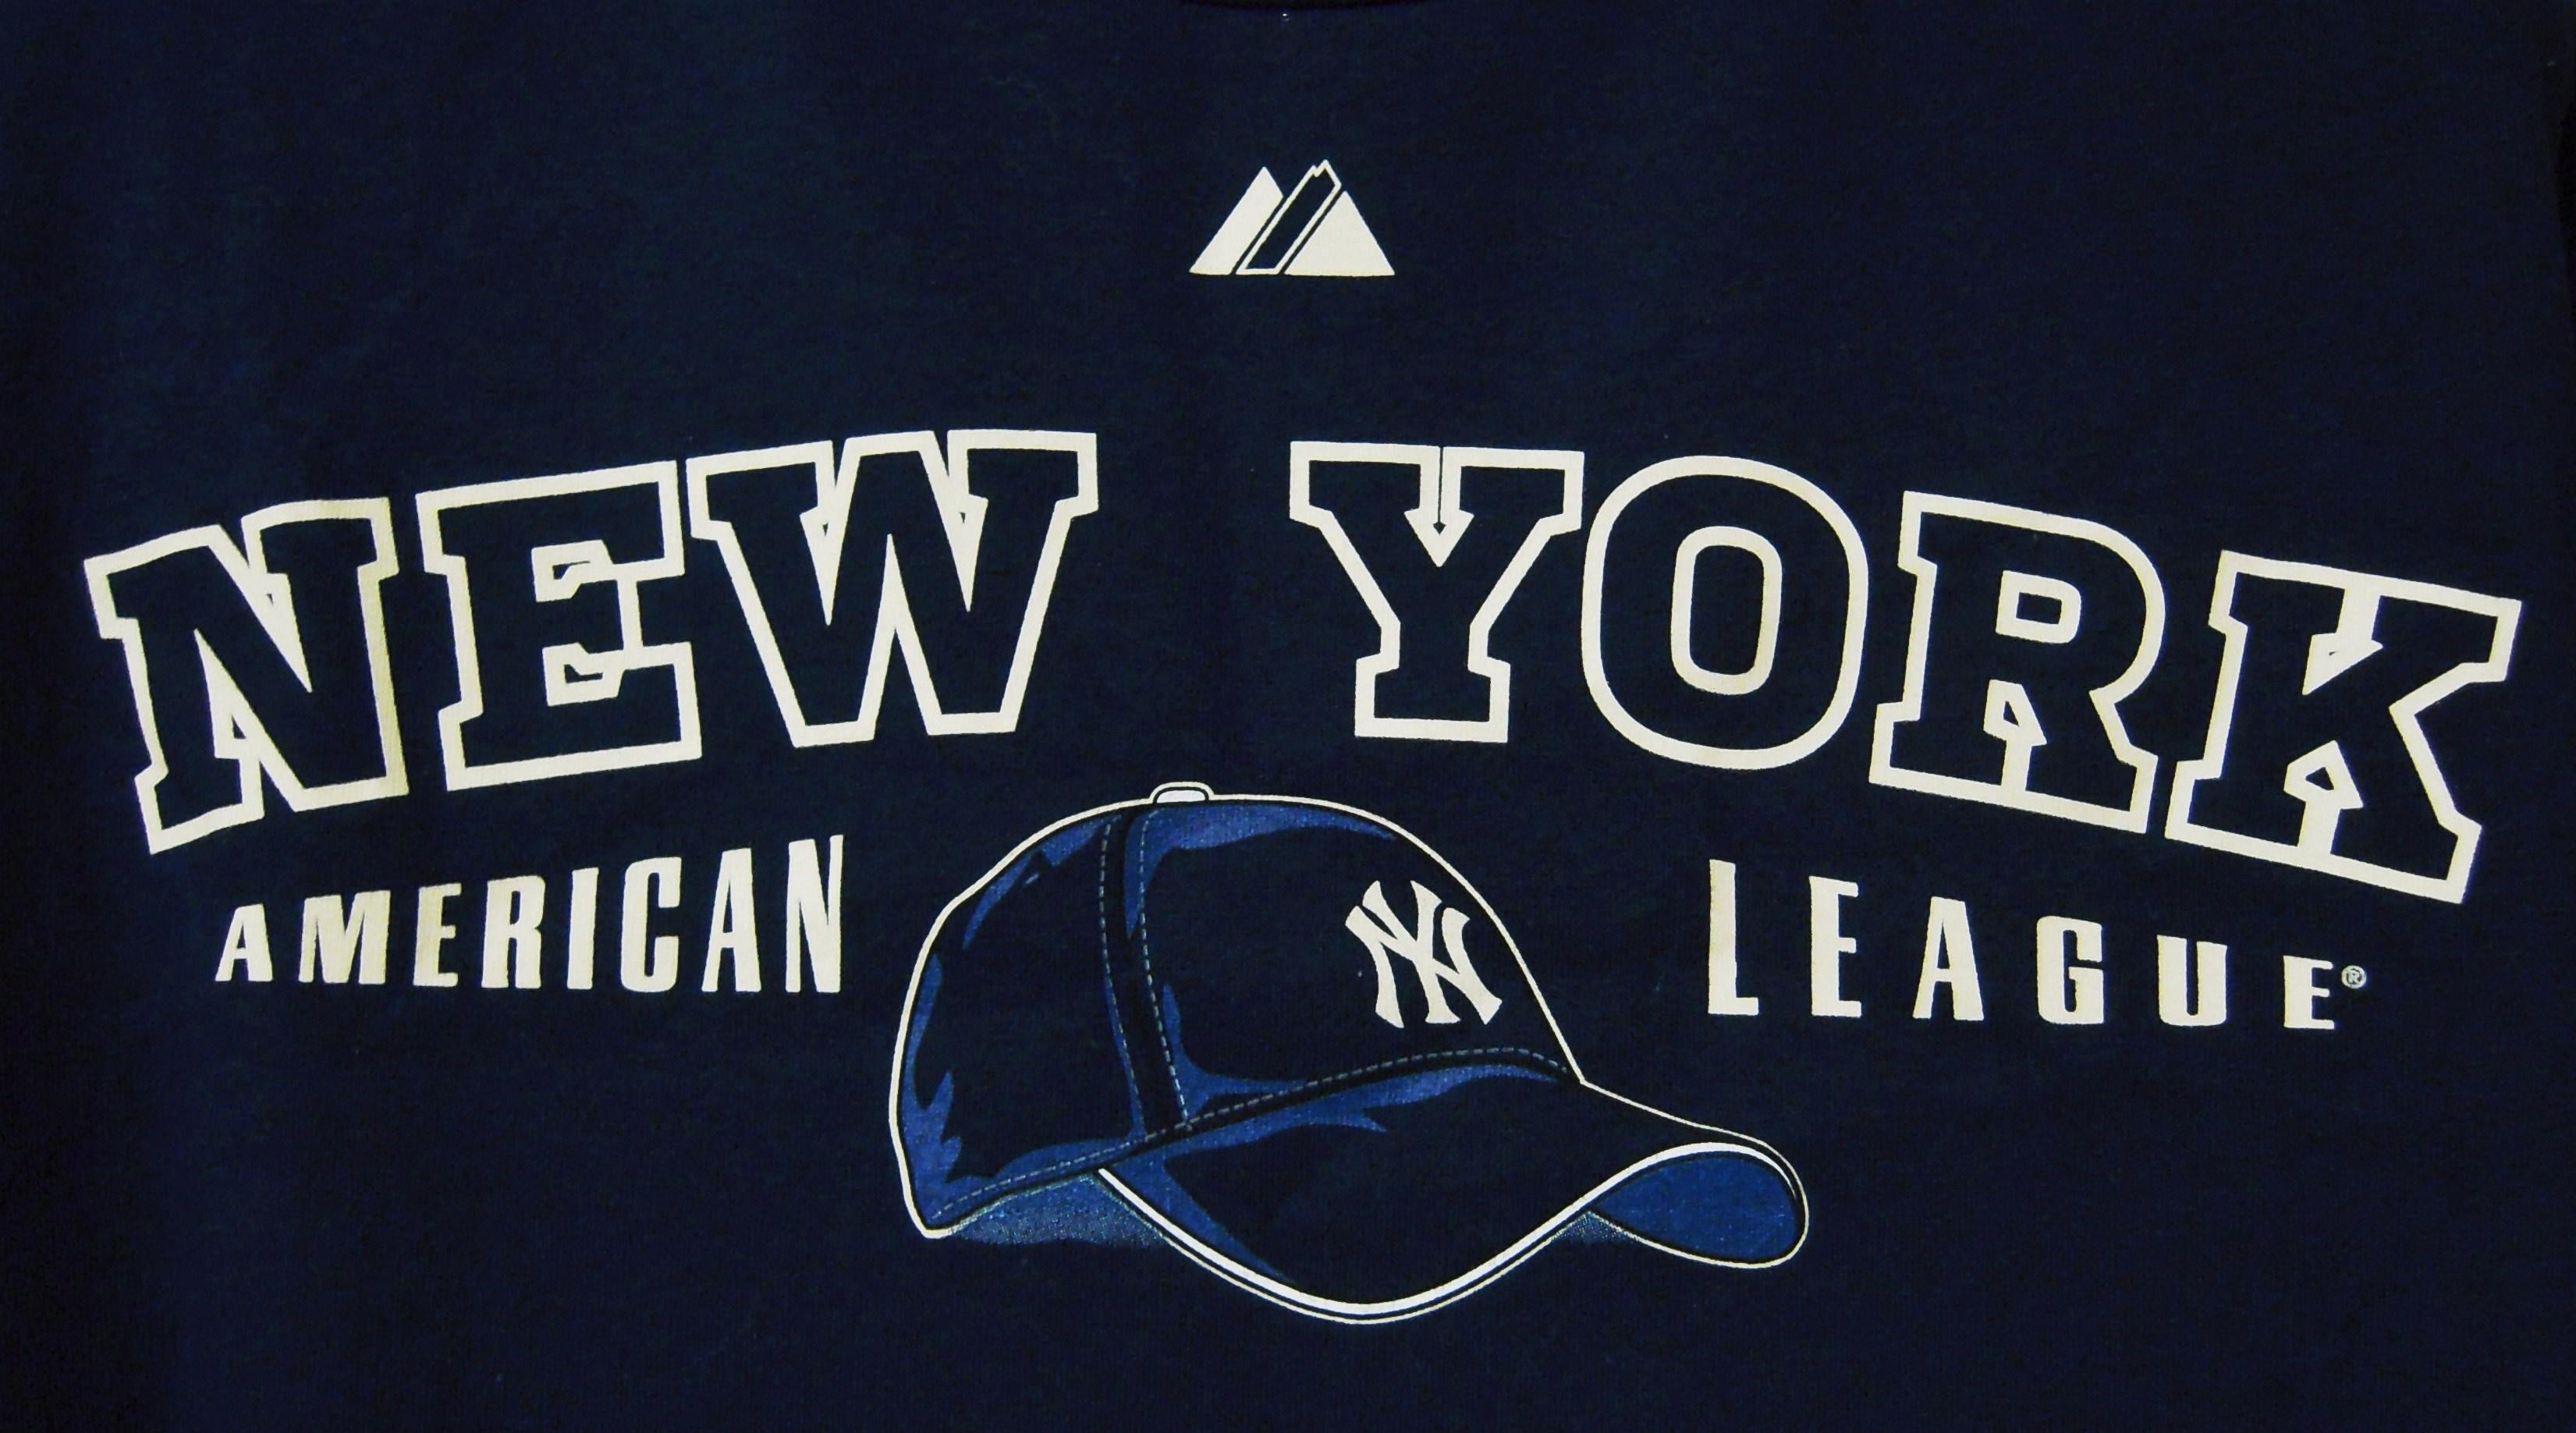 New York Yankees Caps Wallpapers - Wallpaper Cave